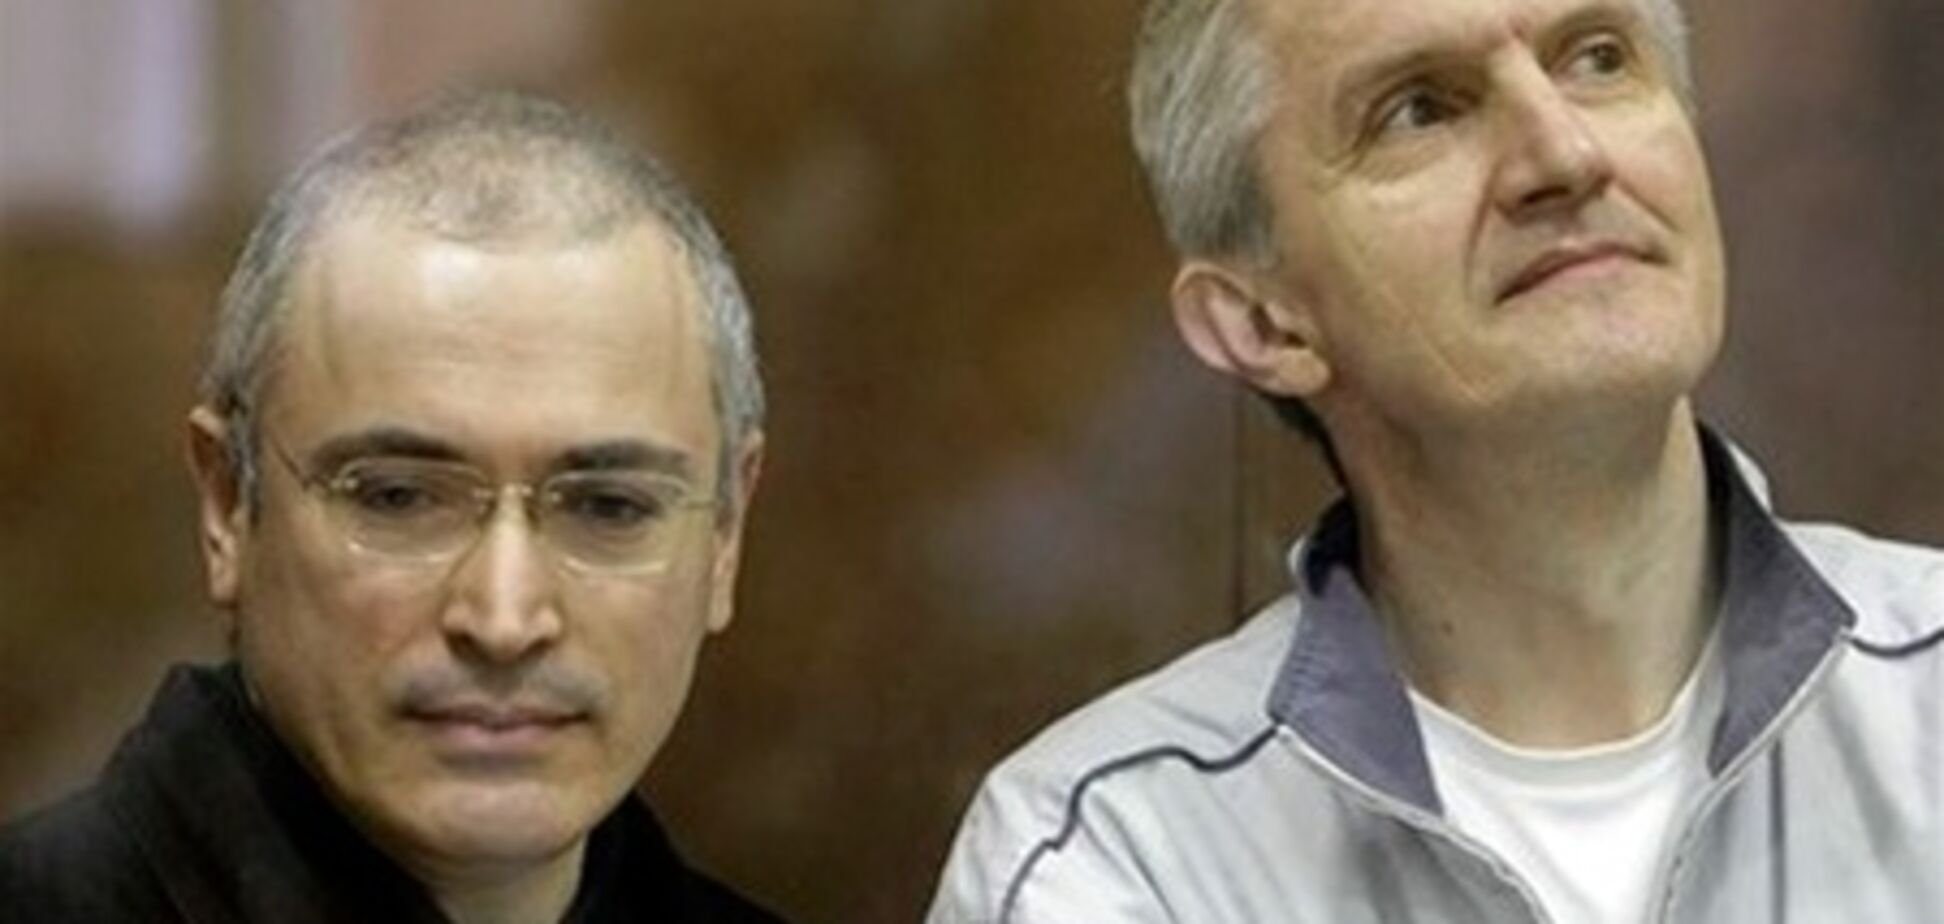 ЗМІ: у Ходорковського і Лебедєва з'явився шанс вийти на свободу